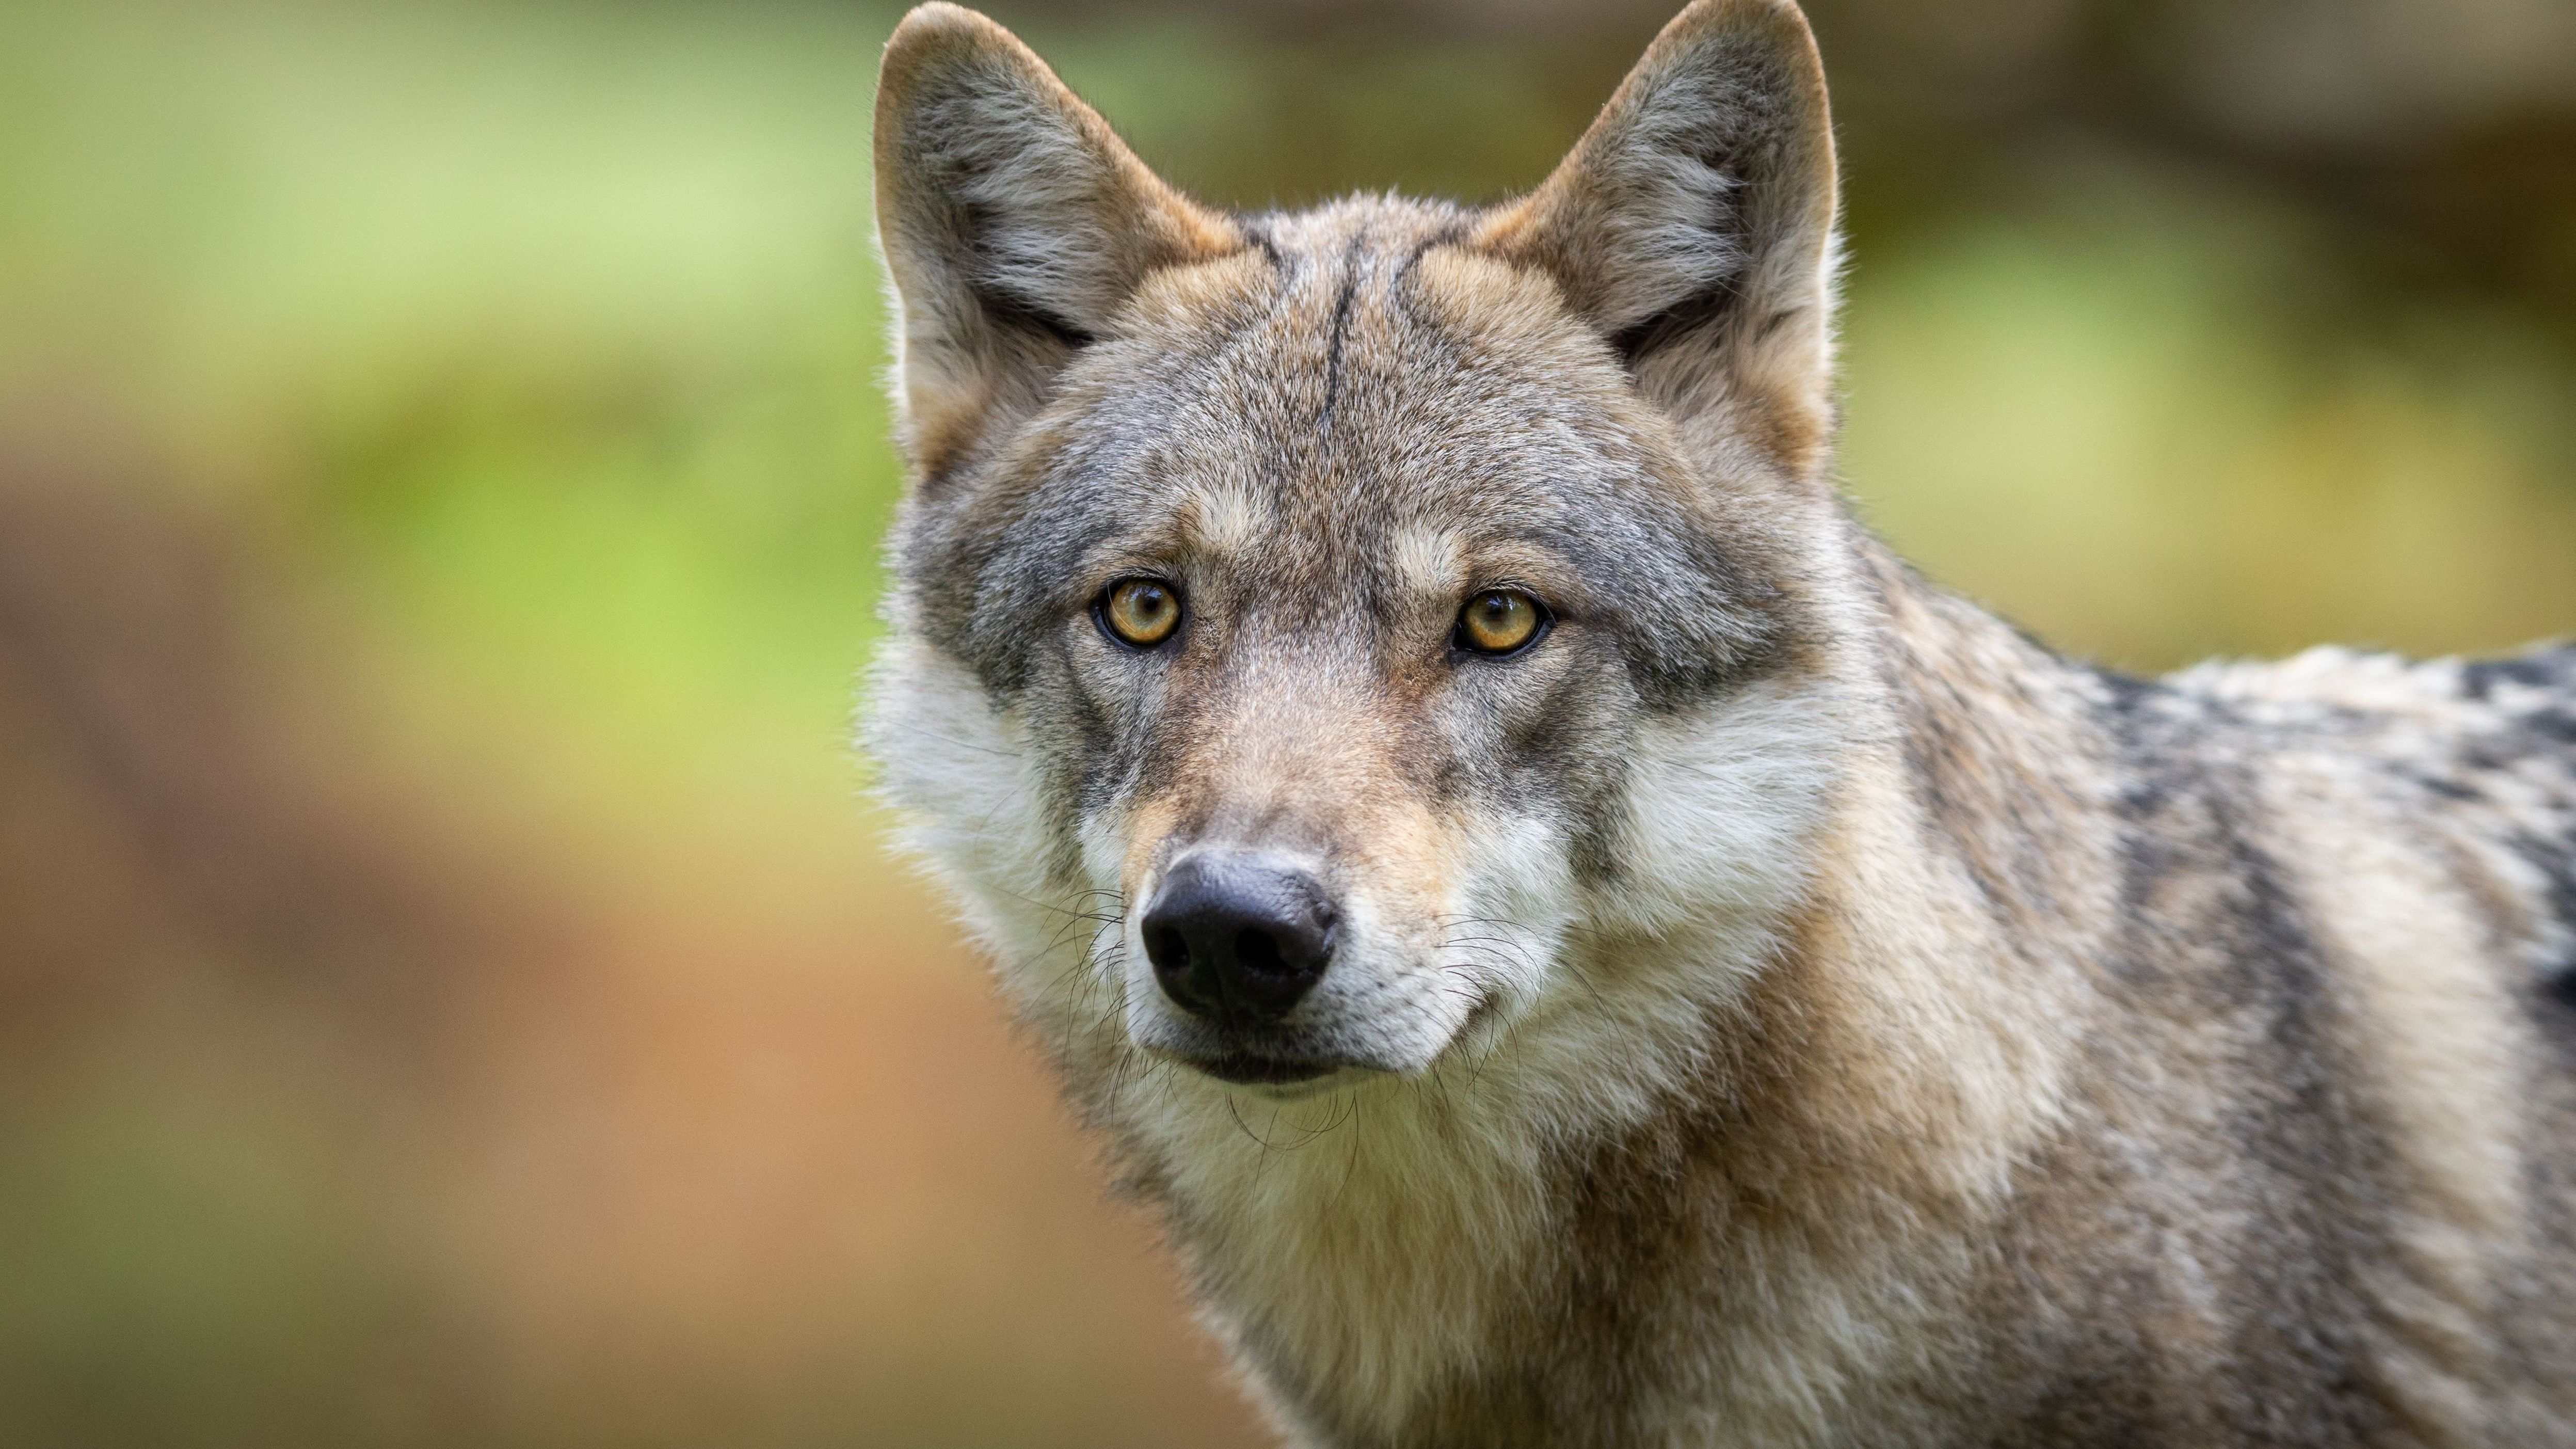 Hör mal! Wölfe haben dreieckige und aufgerichtete Ohren. Im Vergleich zum Hund sind die Ohren beim Wolf eher klein.